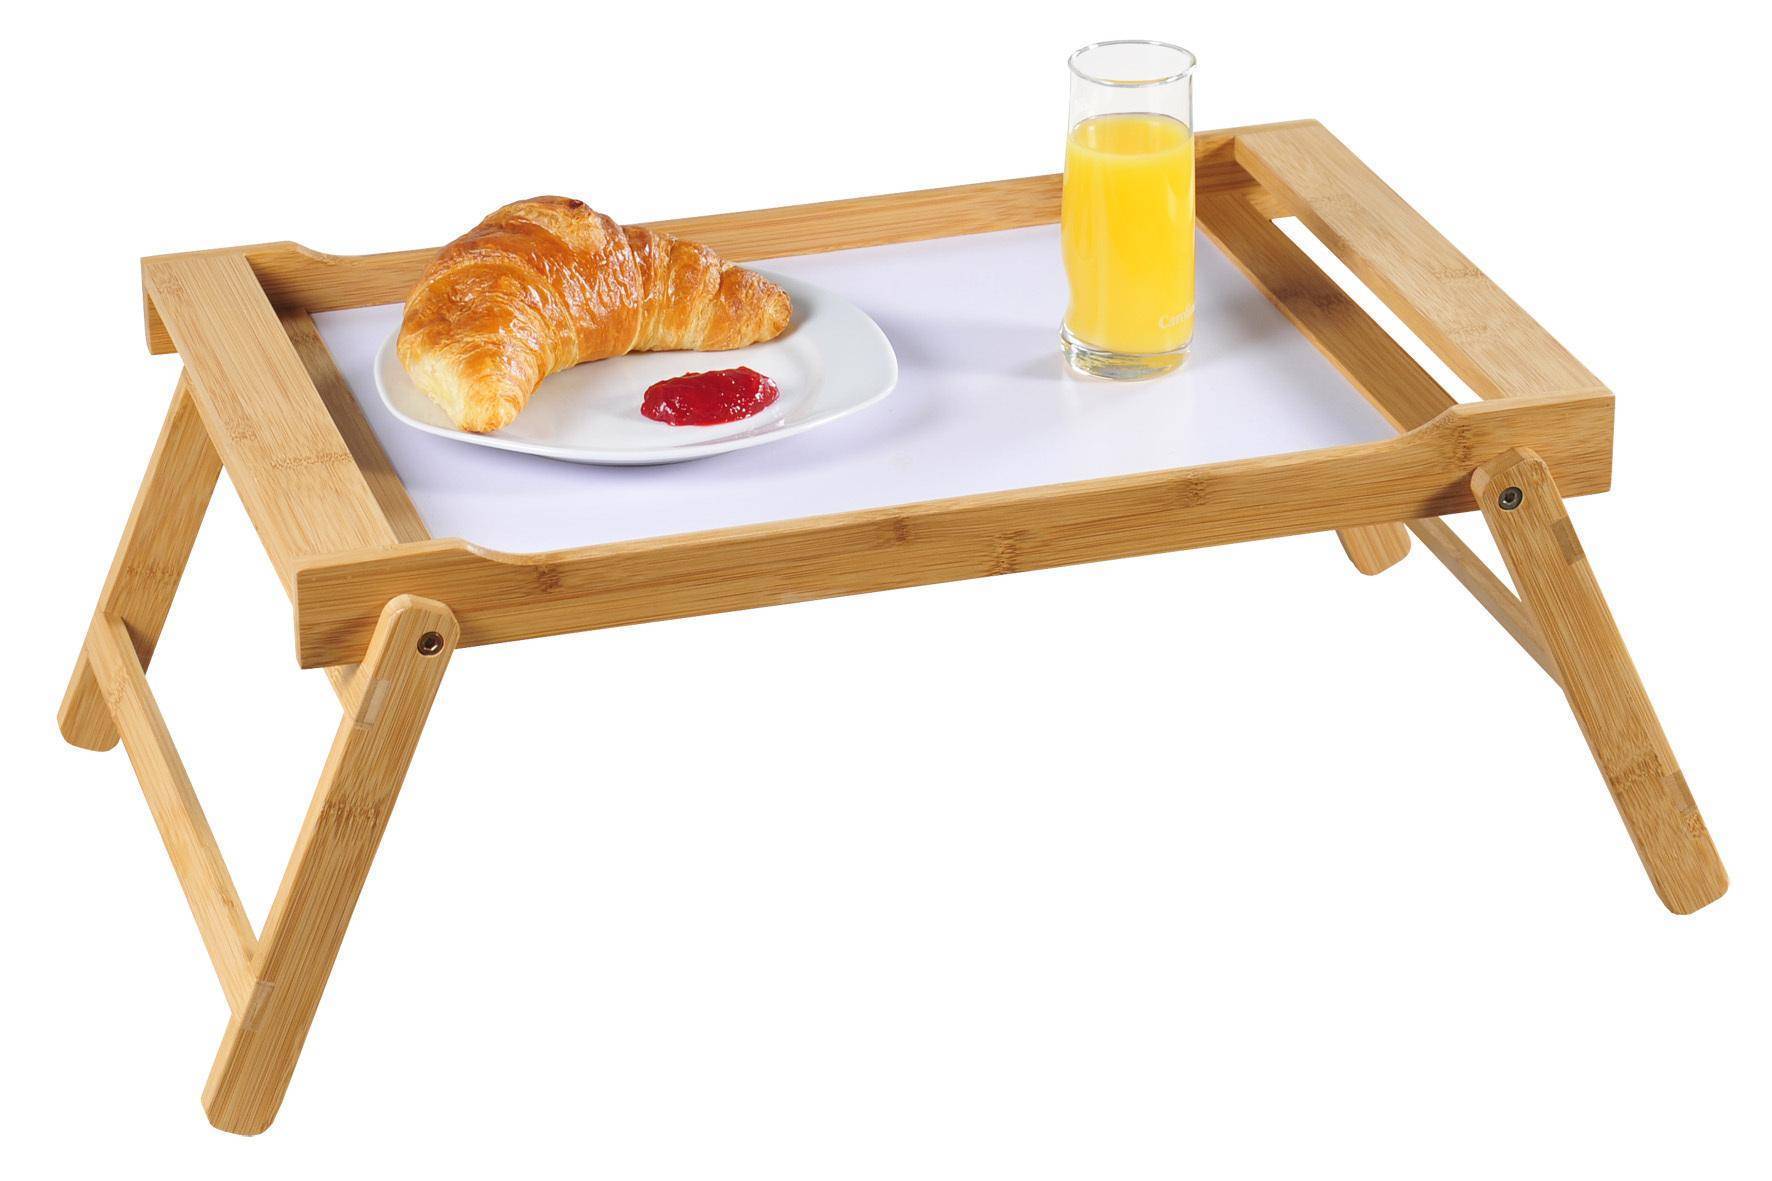 Мастер-класс поделка изделие выпиливание моделирование конструирование столик "завтрак в постель" из бросового материала материал бросовый